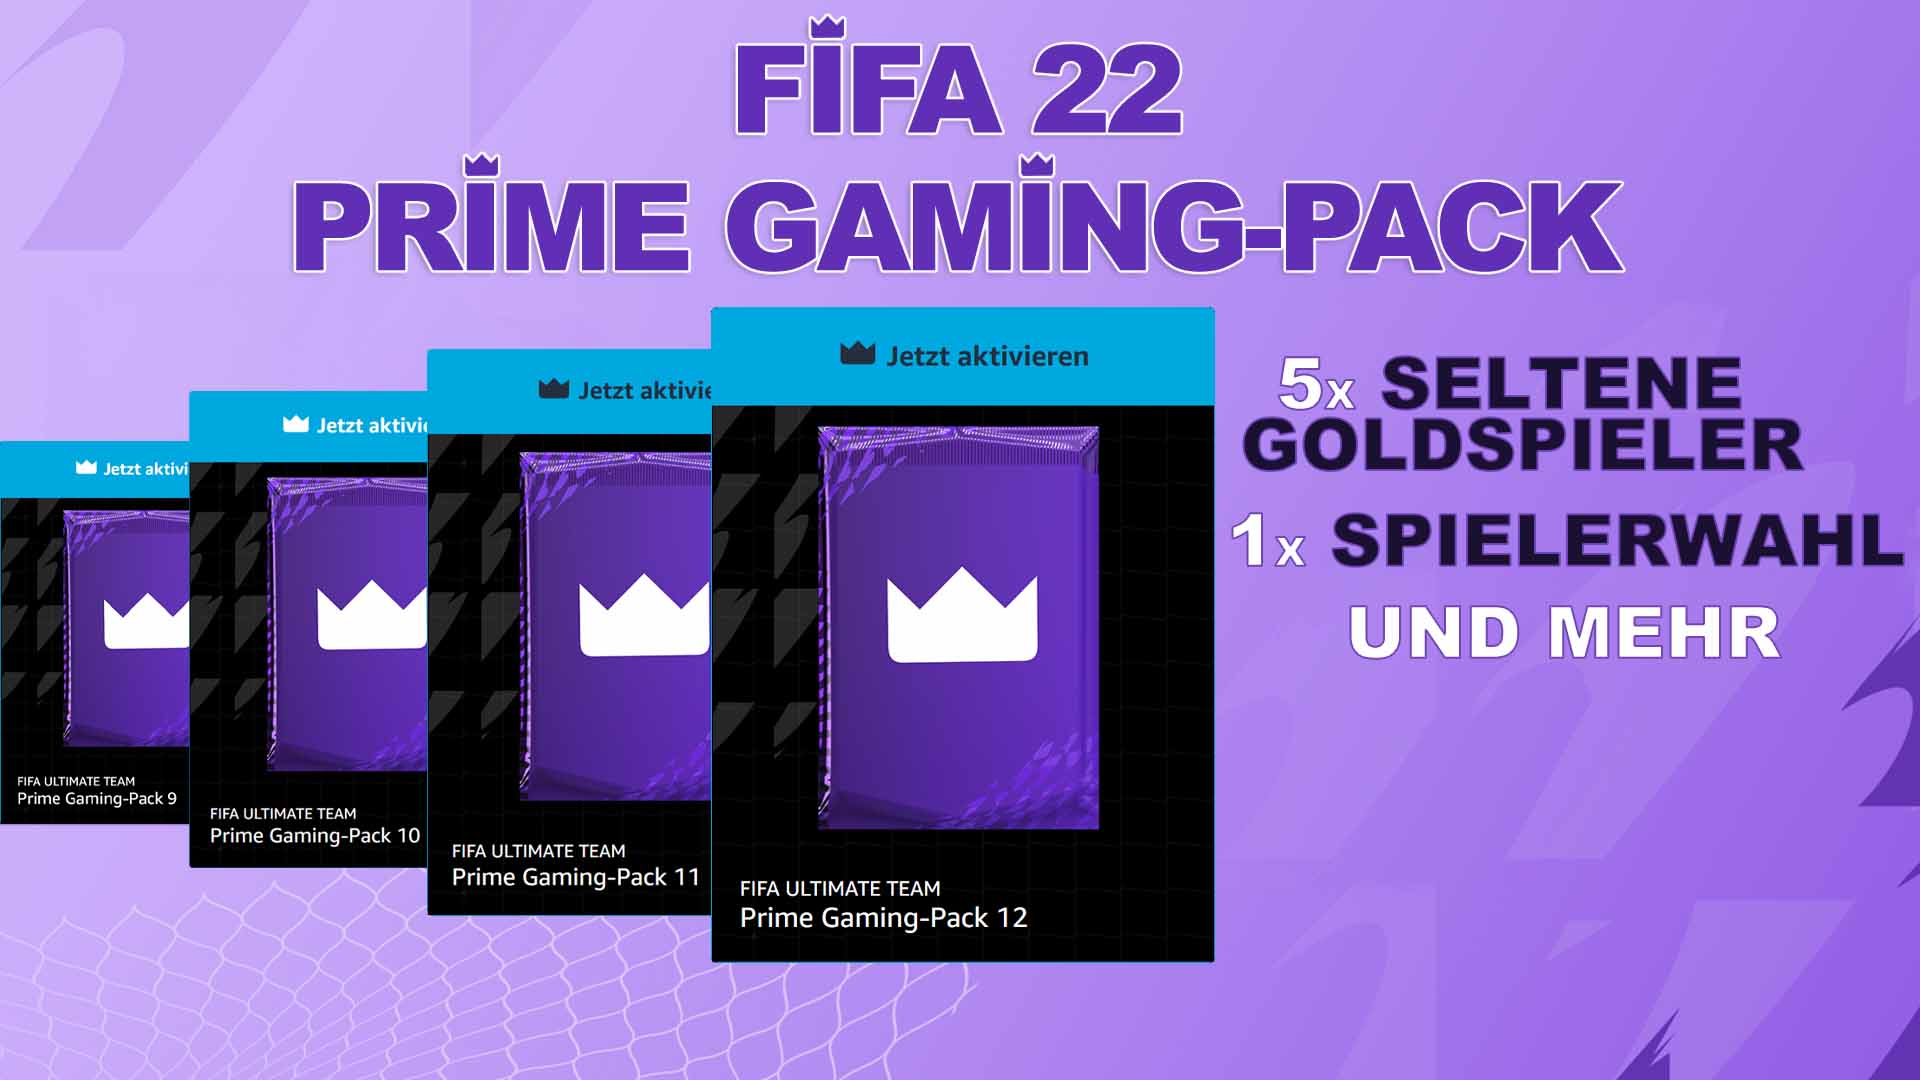 Bilder zu FIFA 22: Prime Gaming Pack 12 (September) ist da und schließt die Saison ab